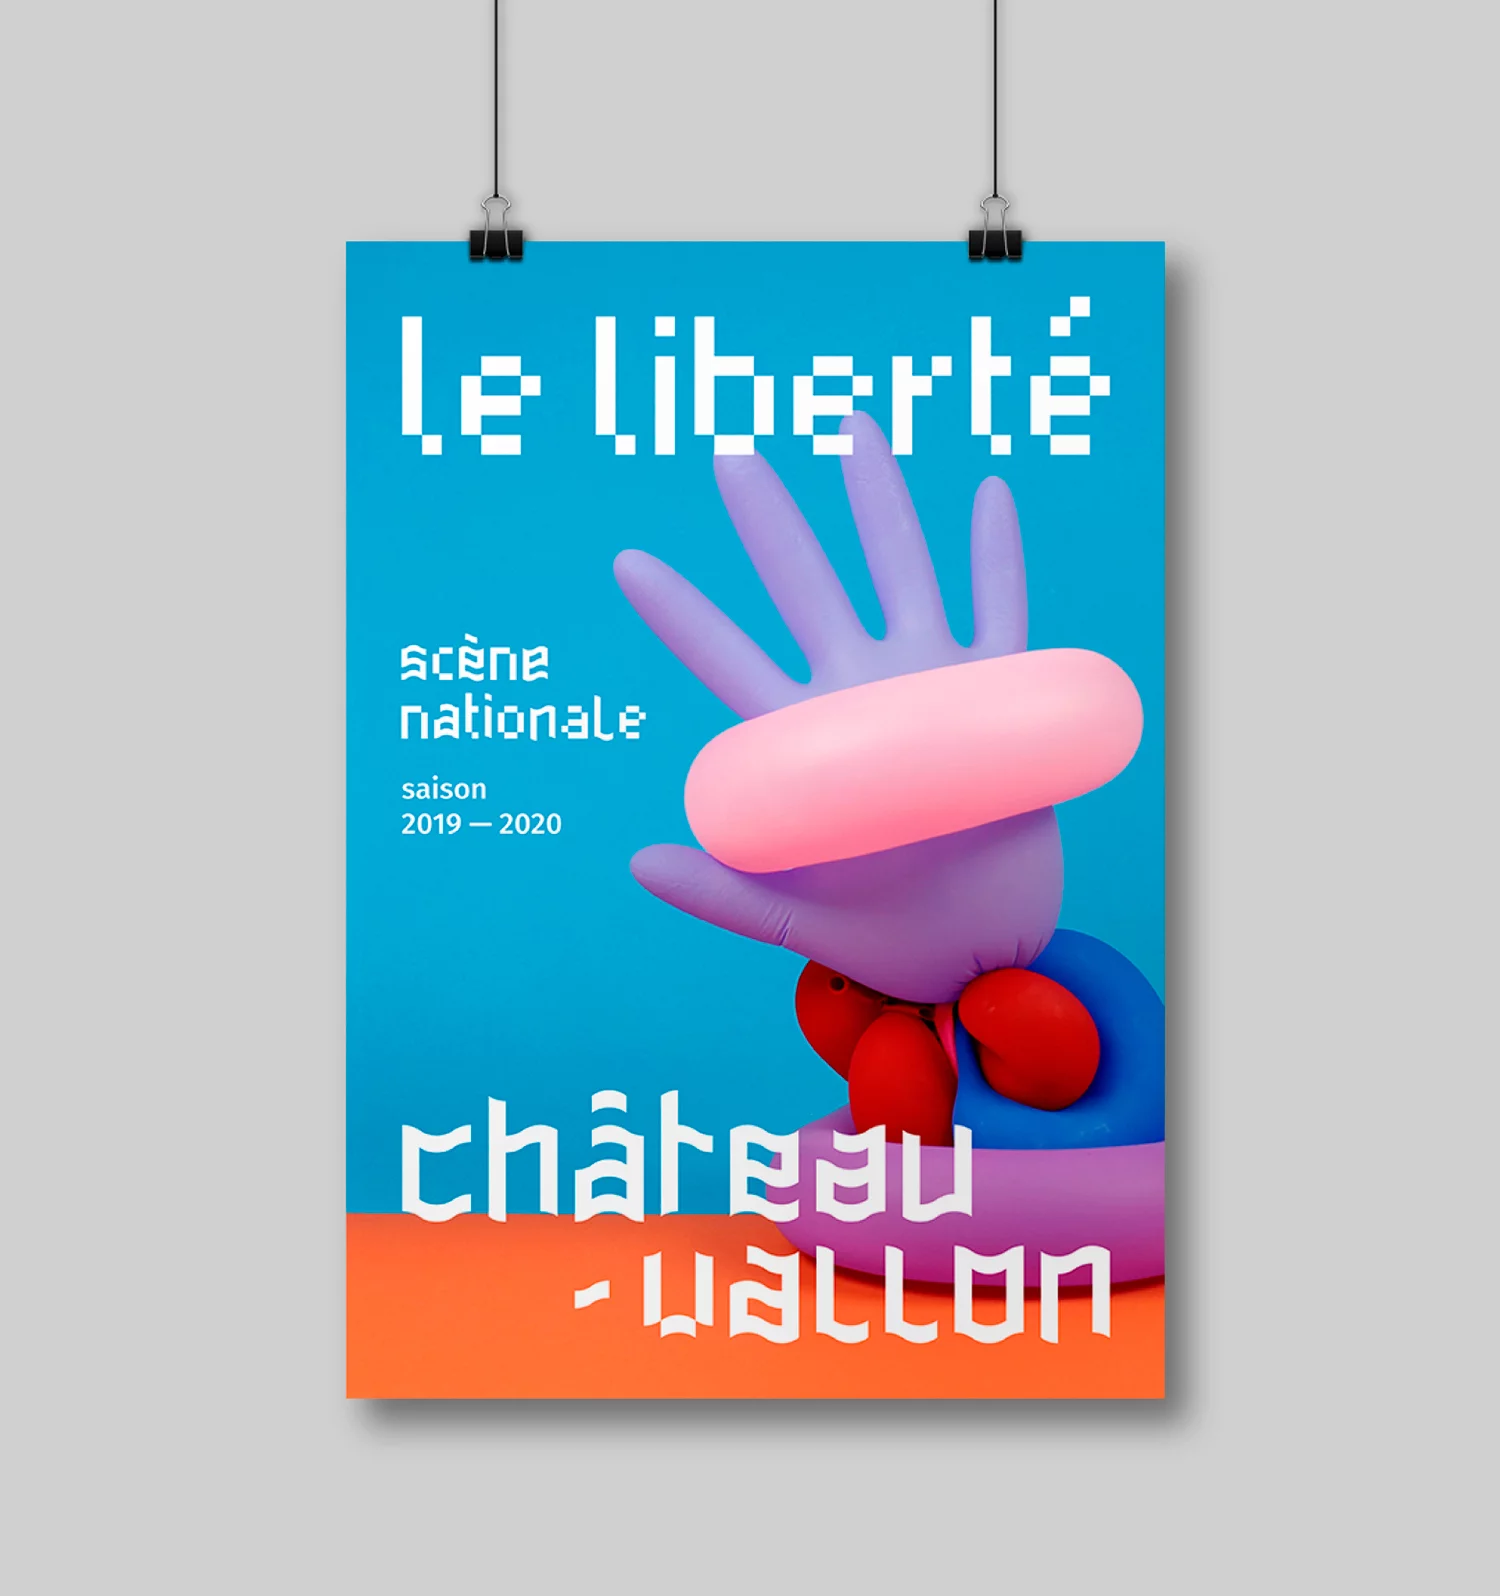 Affiche de la Scène Nationale Châteauvallon-Liberté, avec une photo d'une composition mêlant des objets colorés formant une main